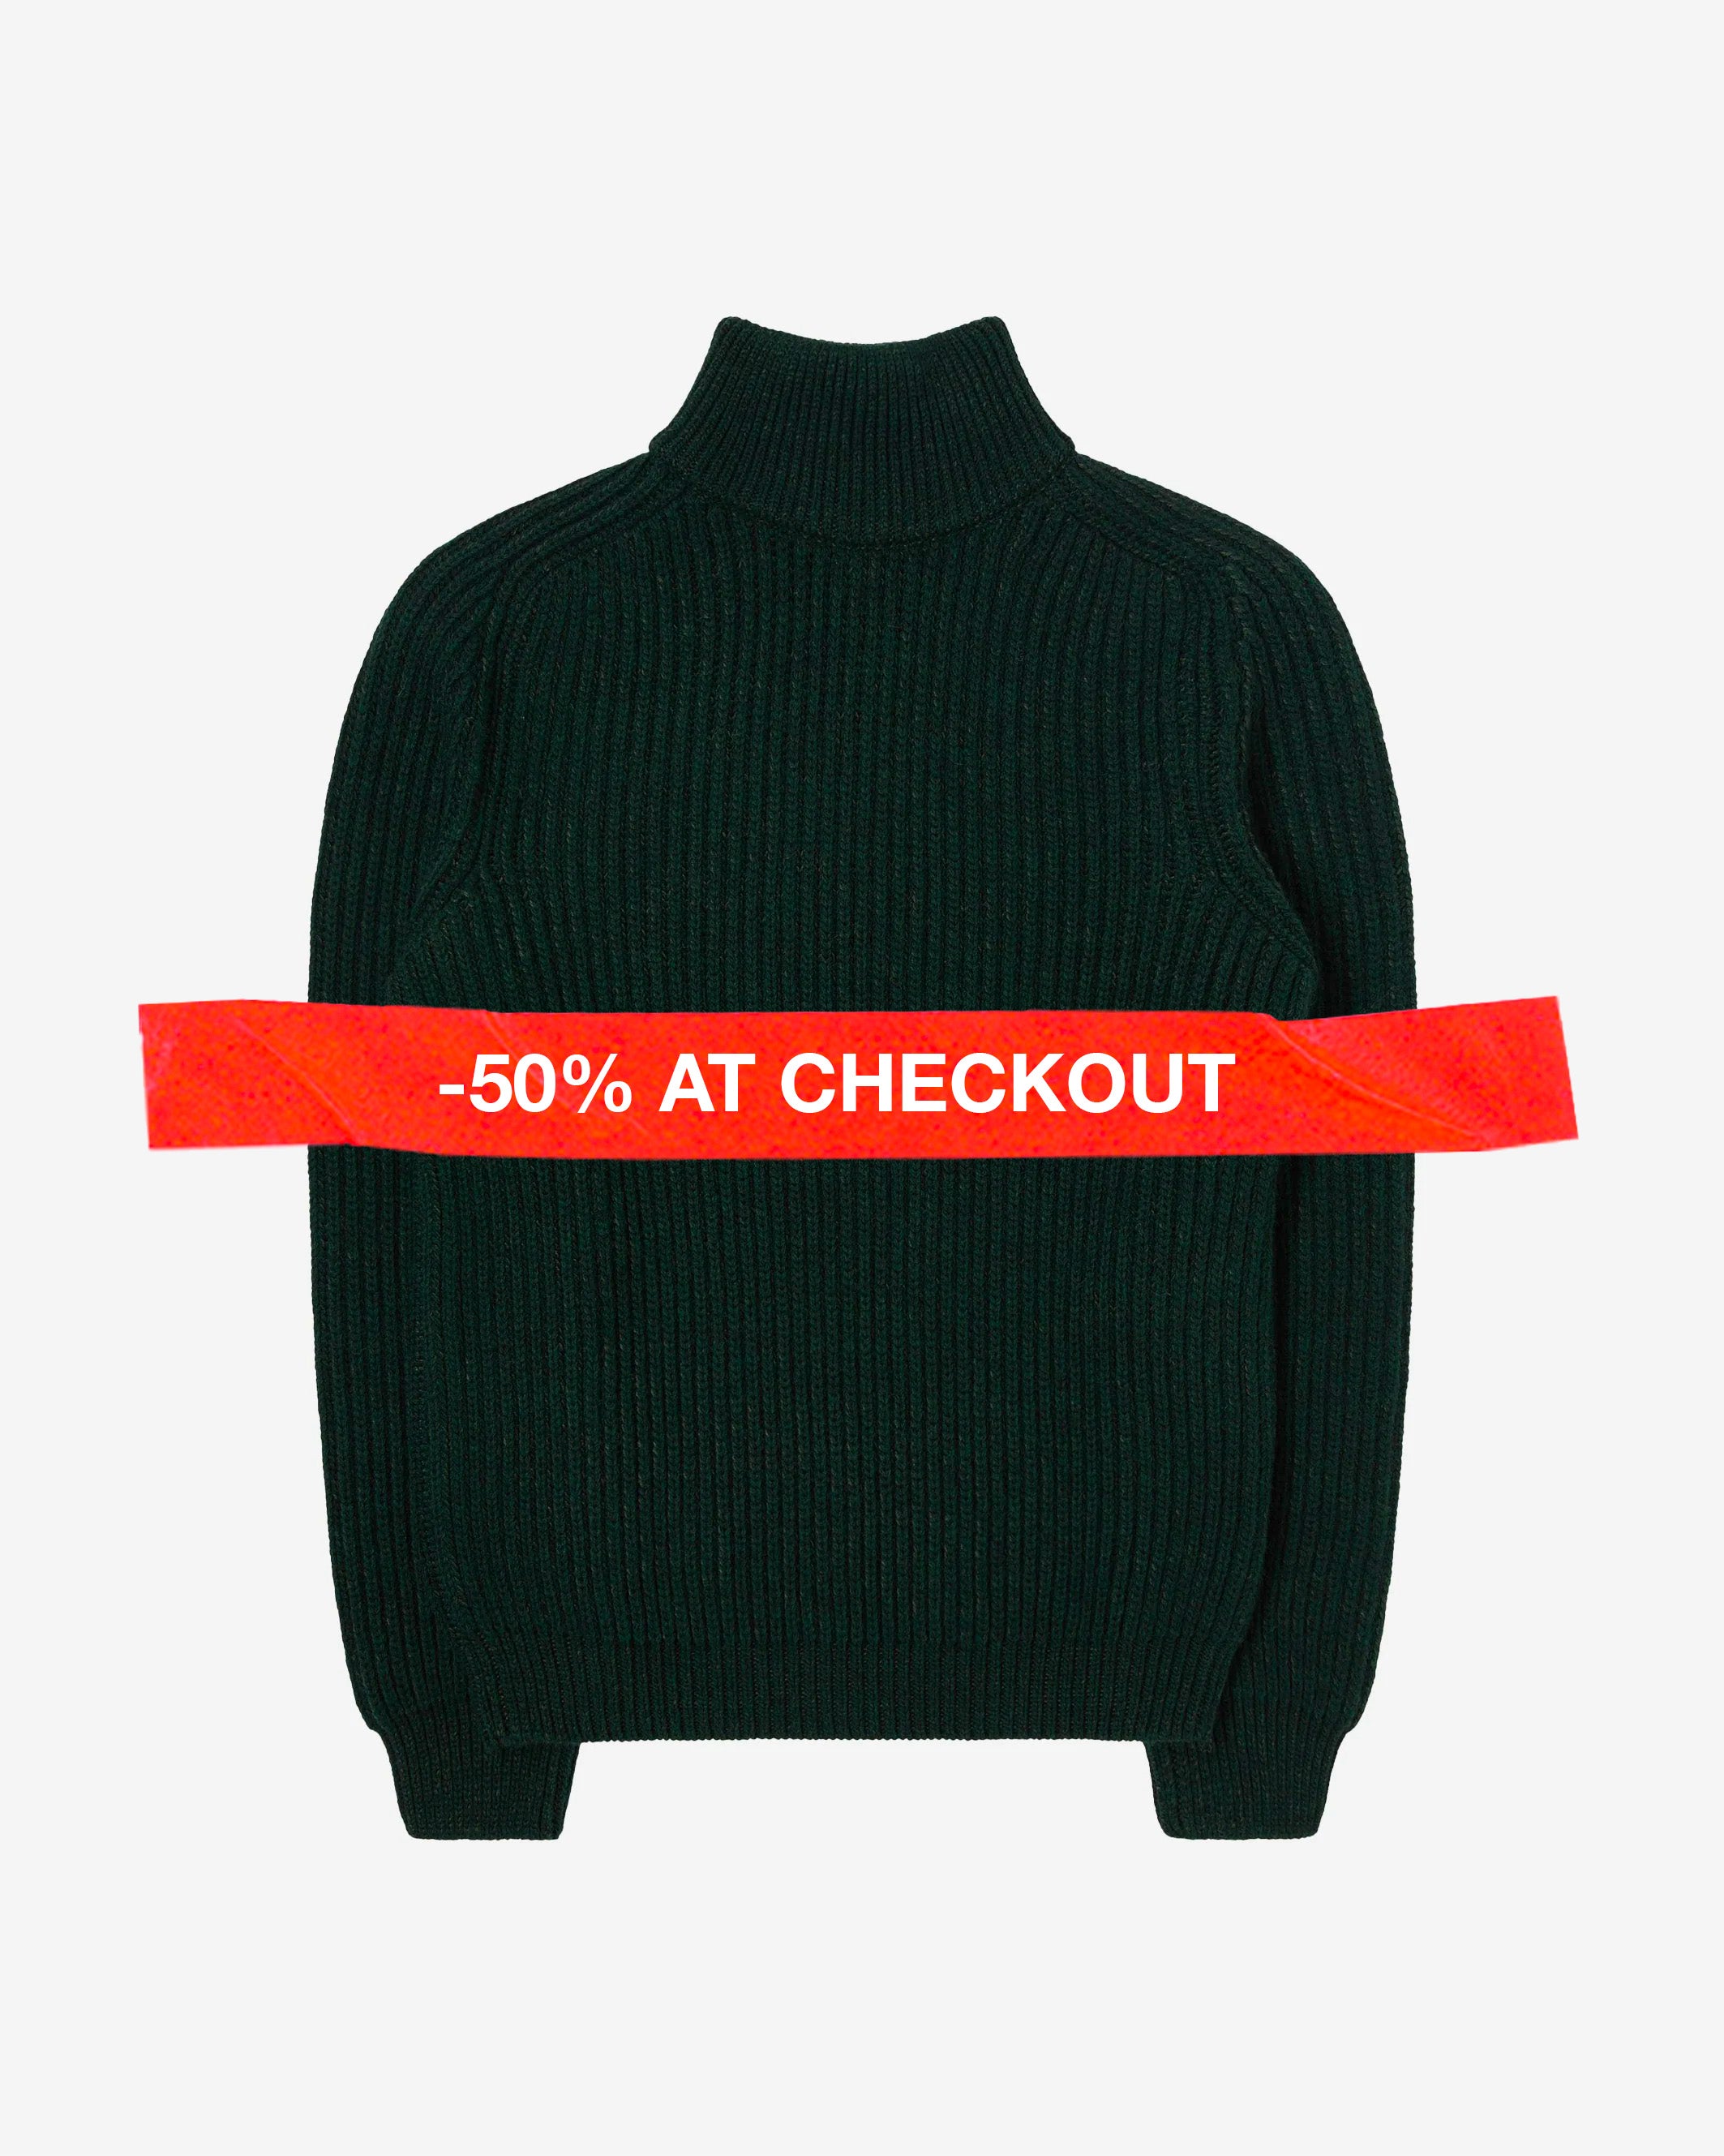 Edwin - Roni High Collar Sweater